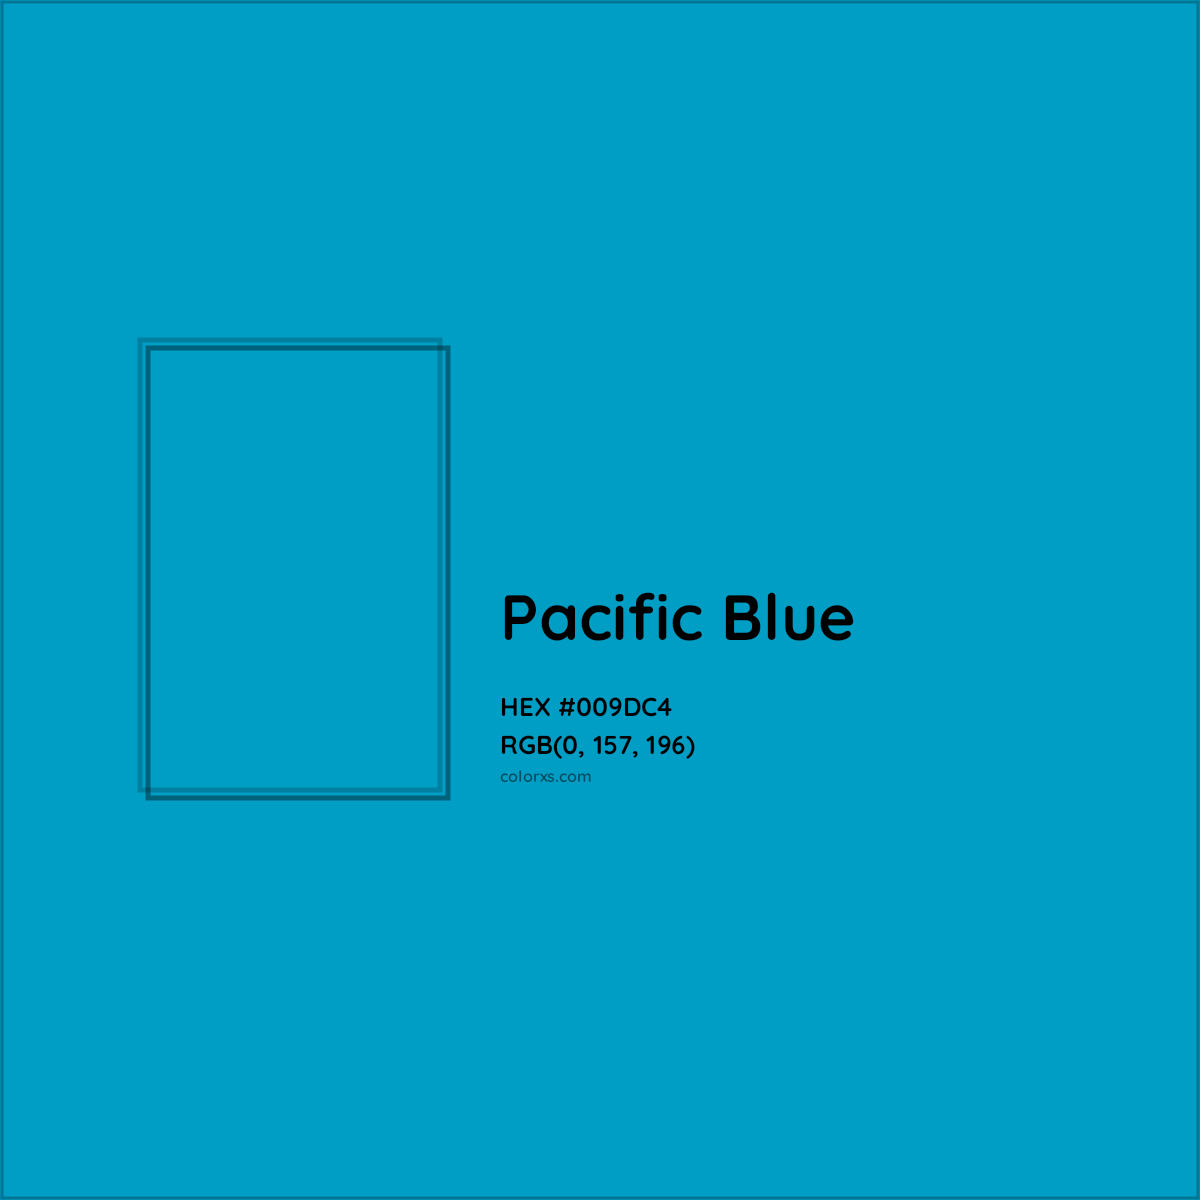 HEX #009DC4 Pacific Blue Color Crayola Crayons - Color Code